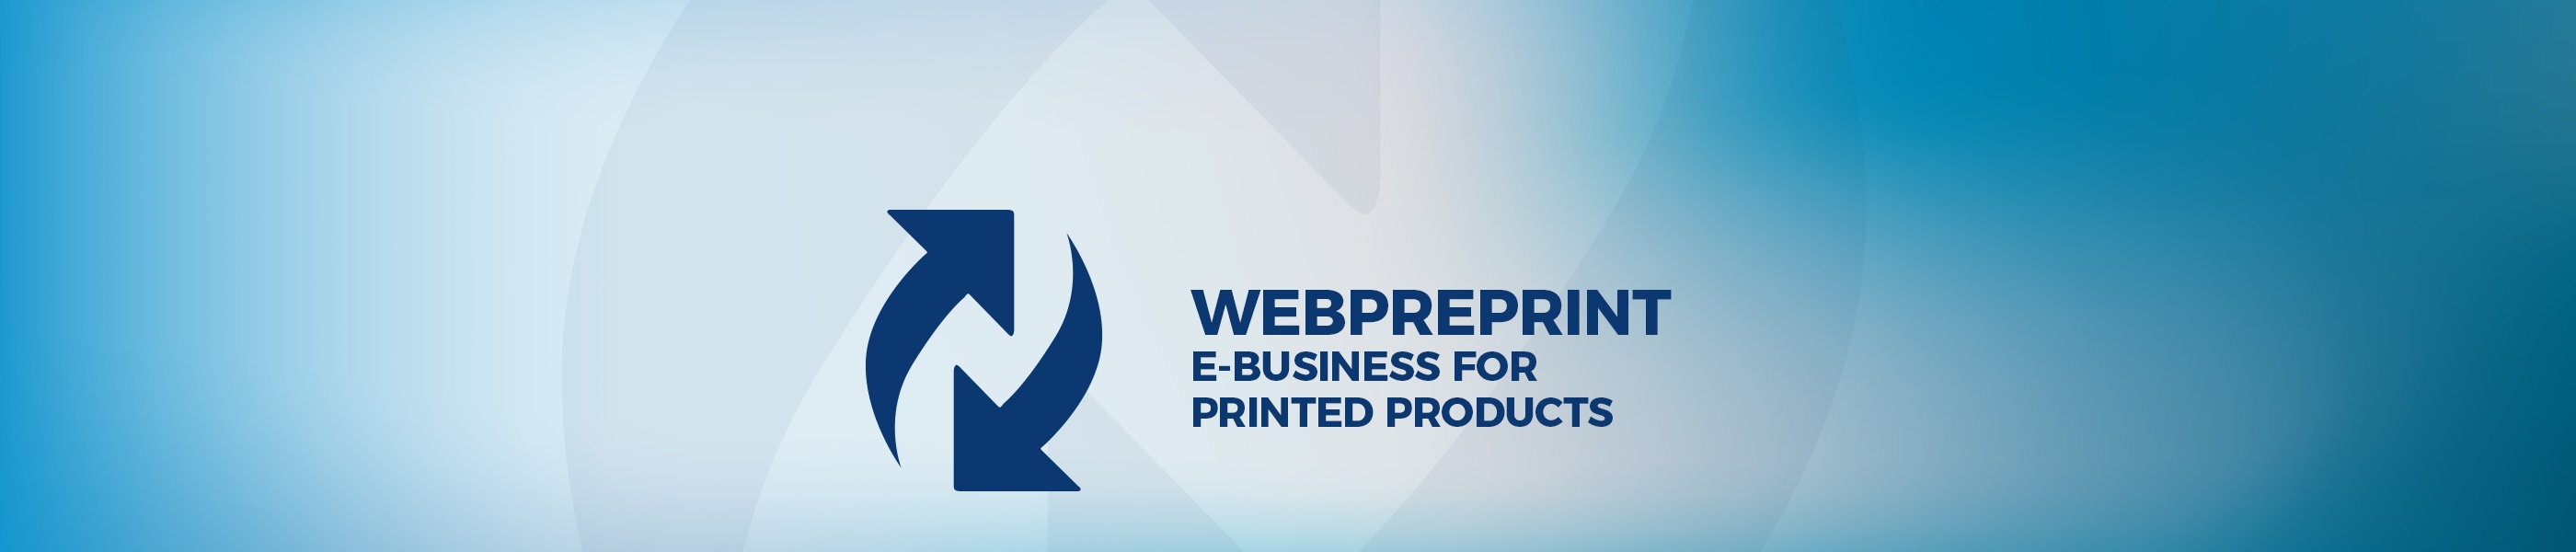 180108_Produkte_webpreprint_EN.jpg